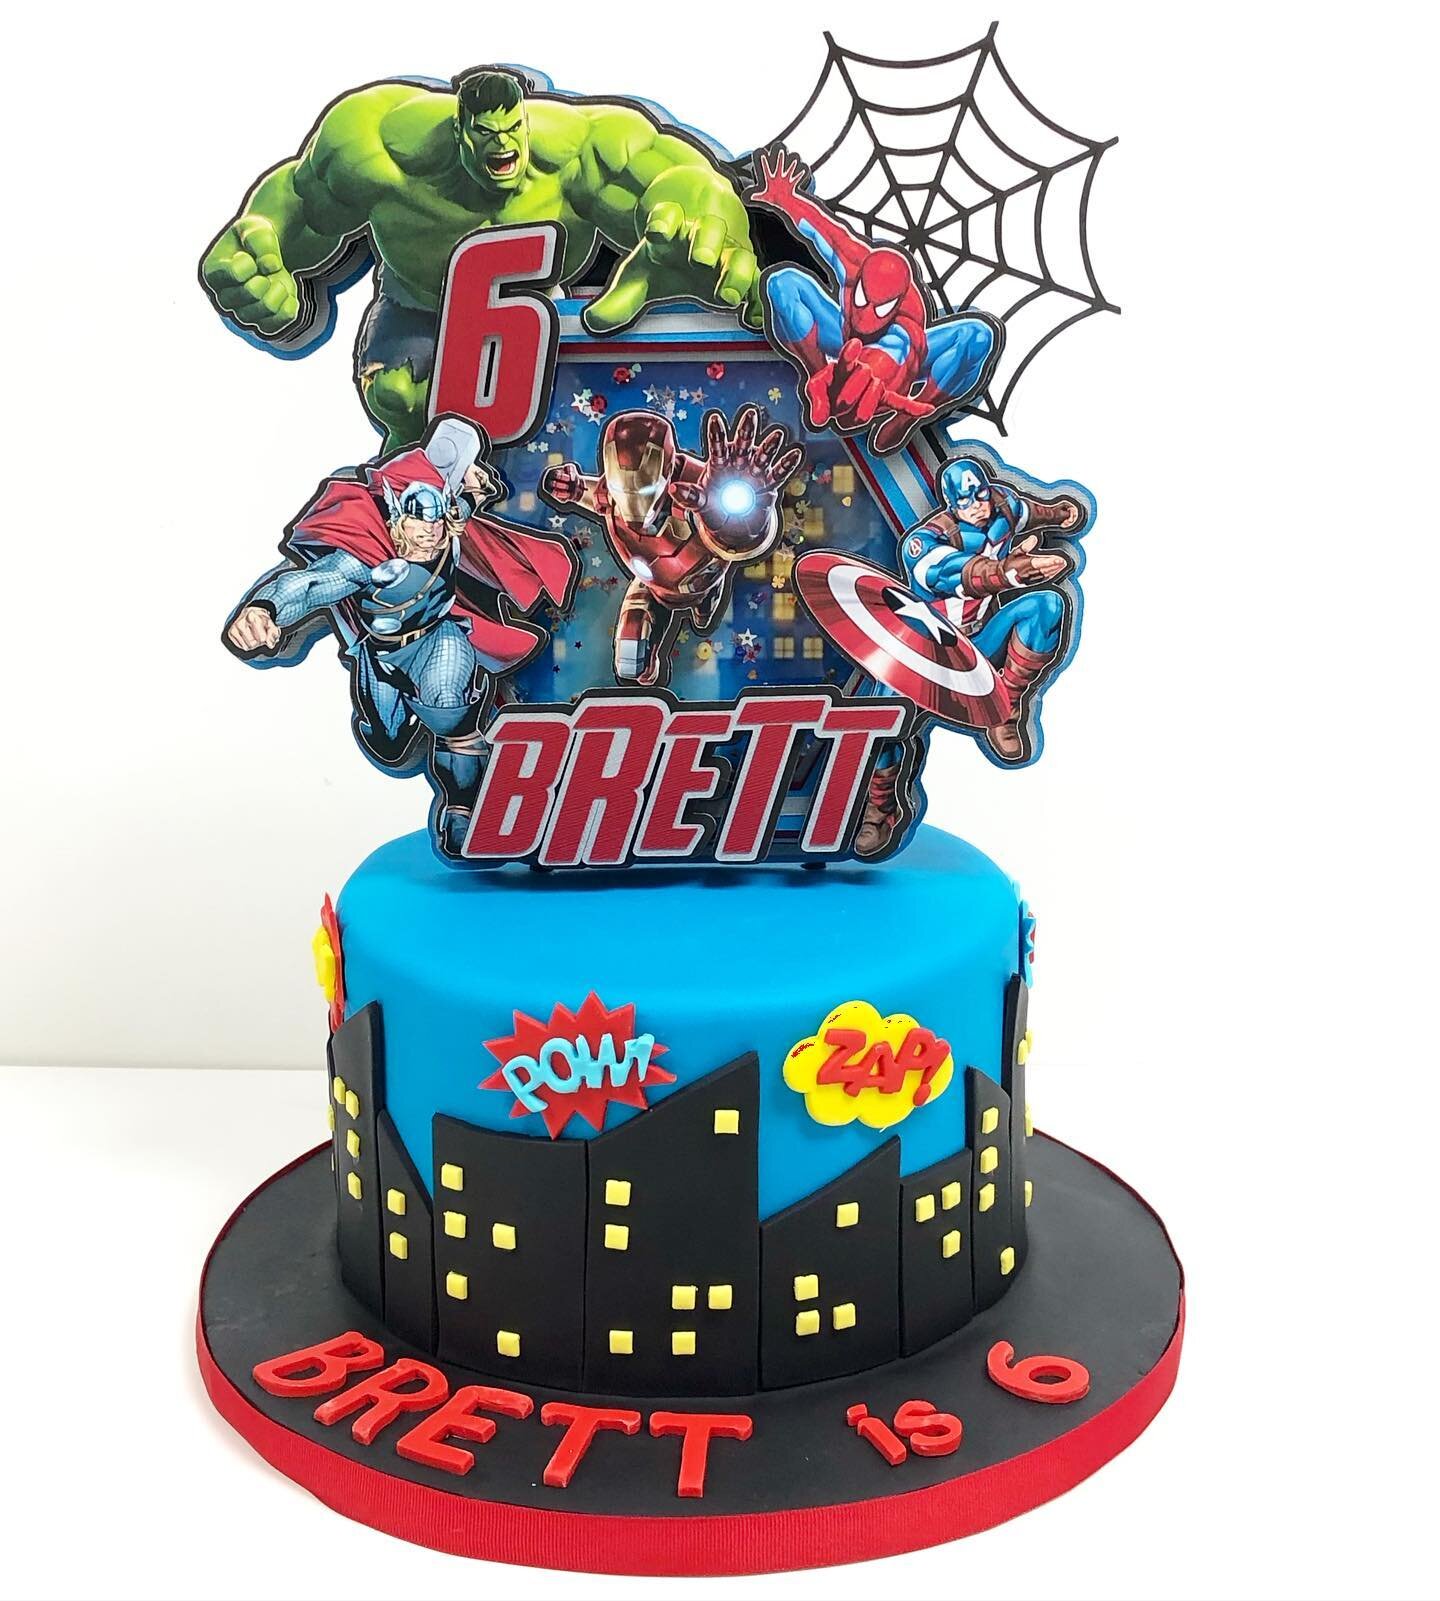 Happy birthday Brett!! 🎉🥳